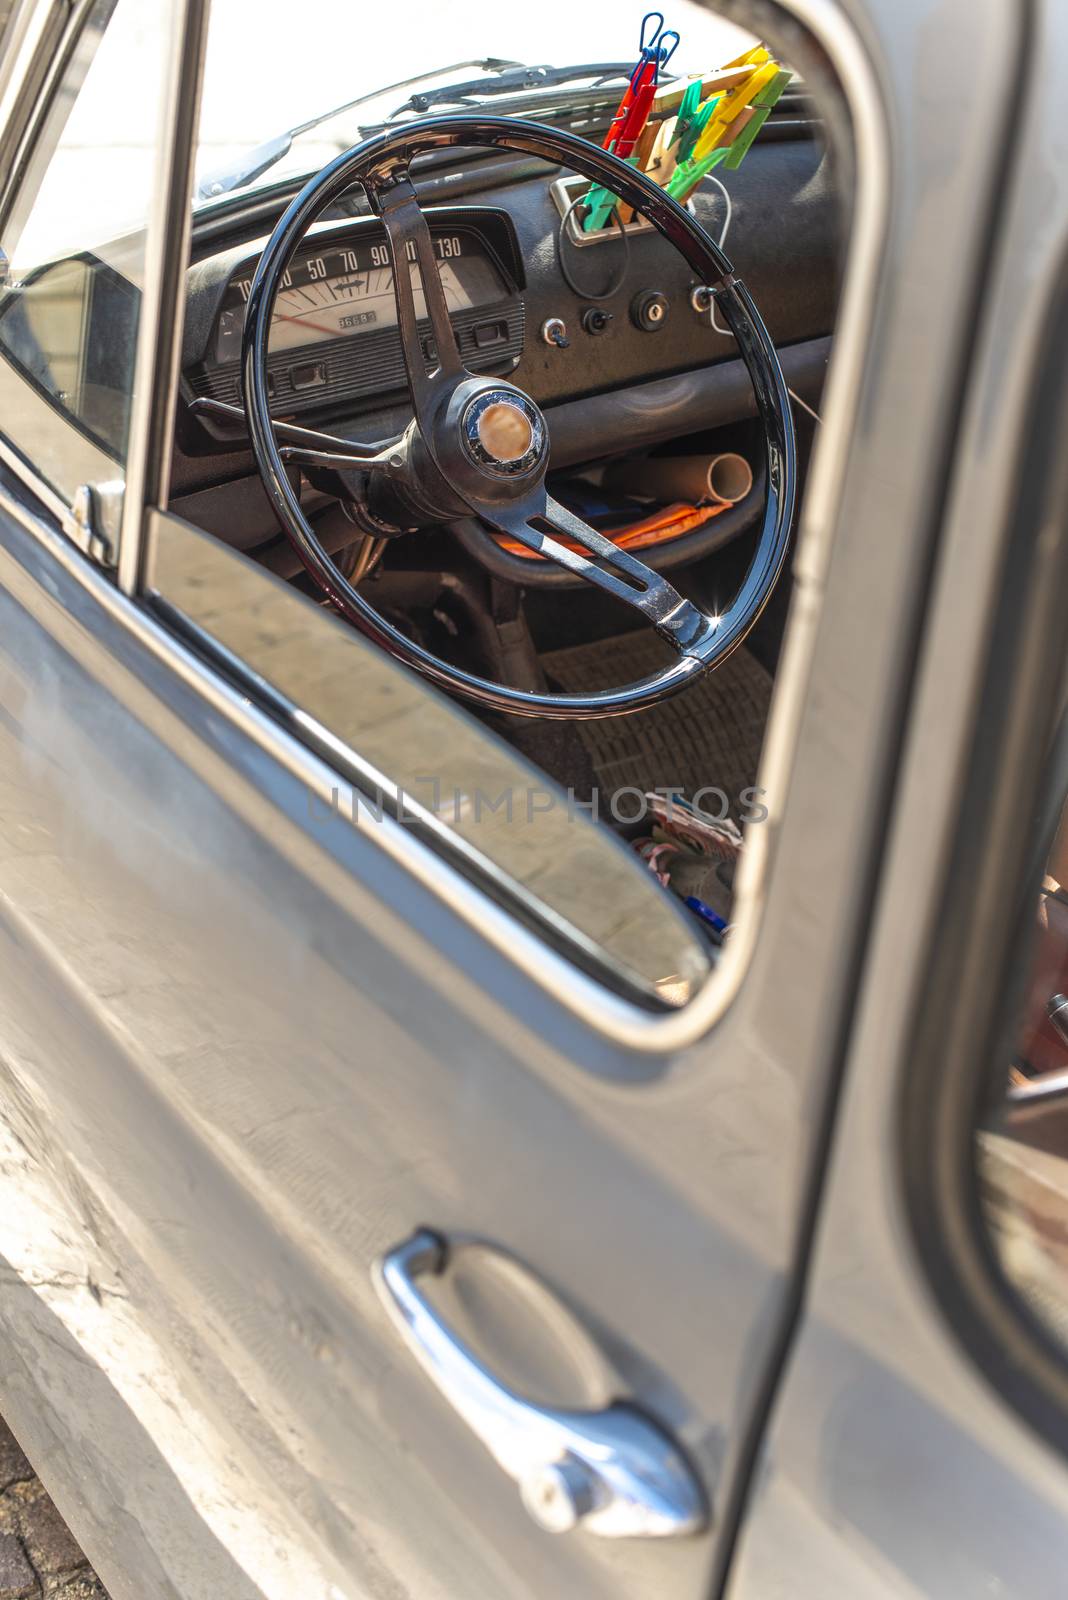 Steering wheel on vintage car. View from the door window. Opened window on old vintage car.